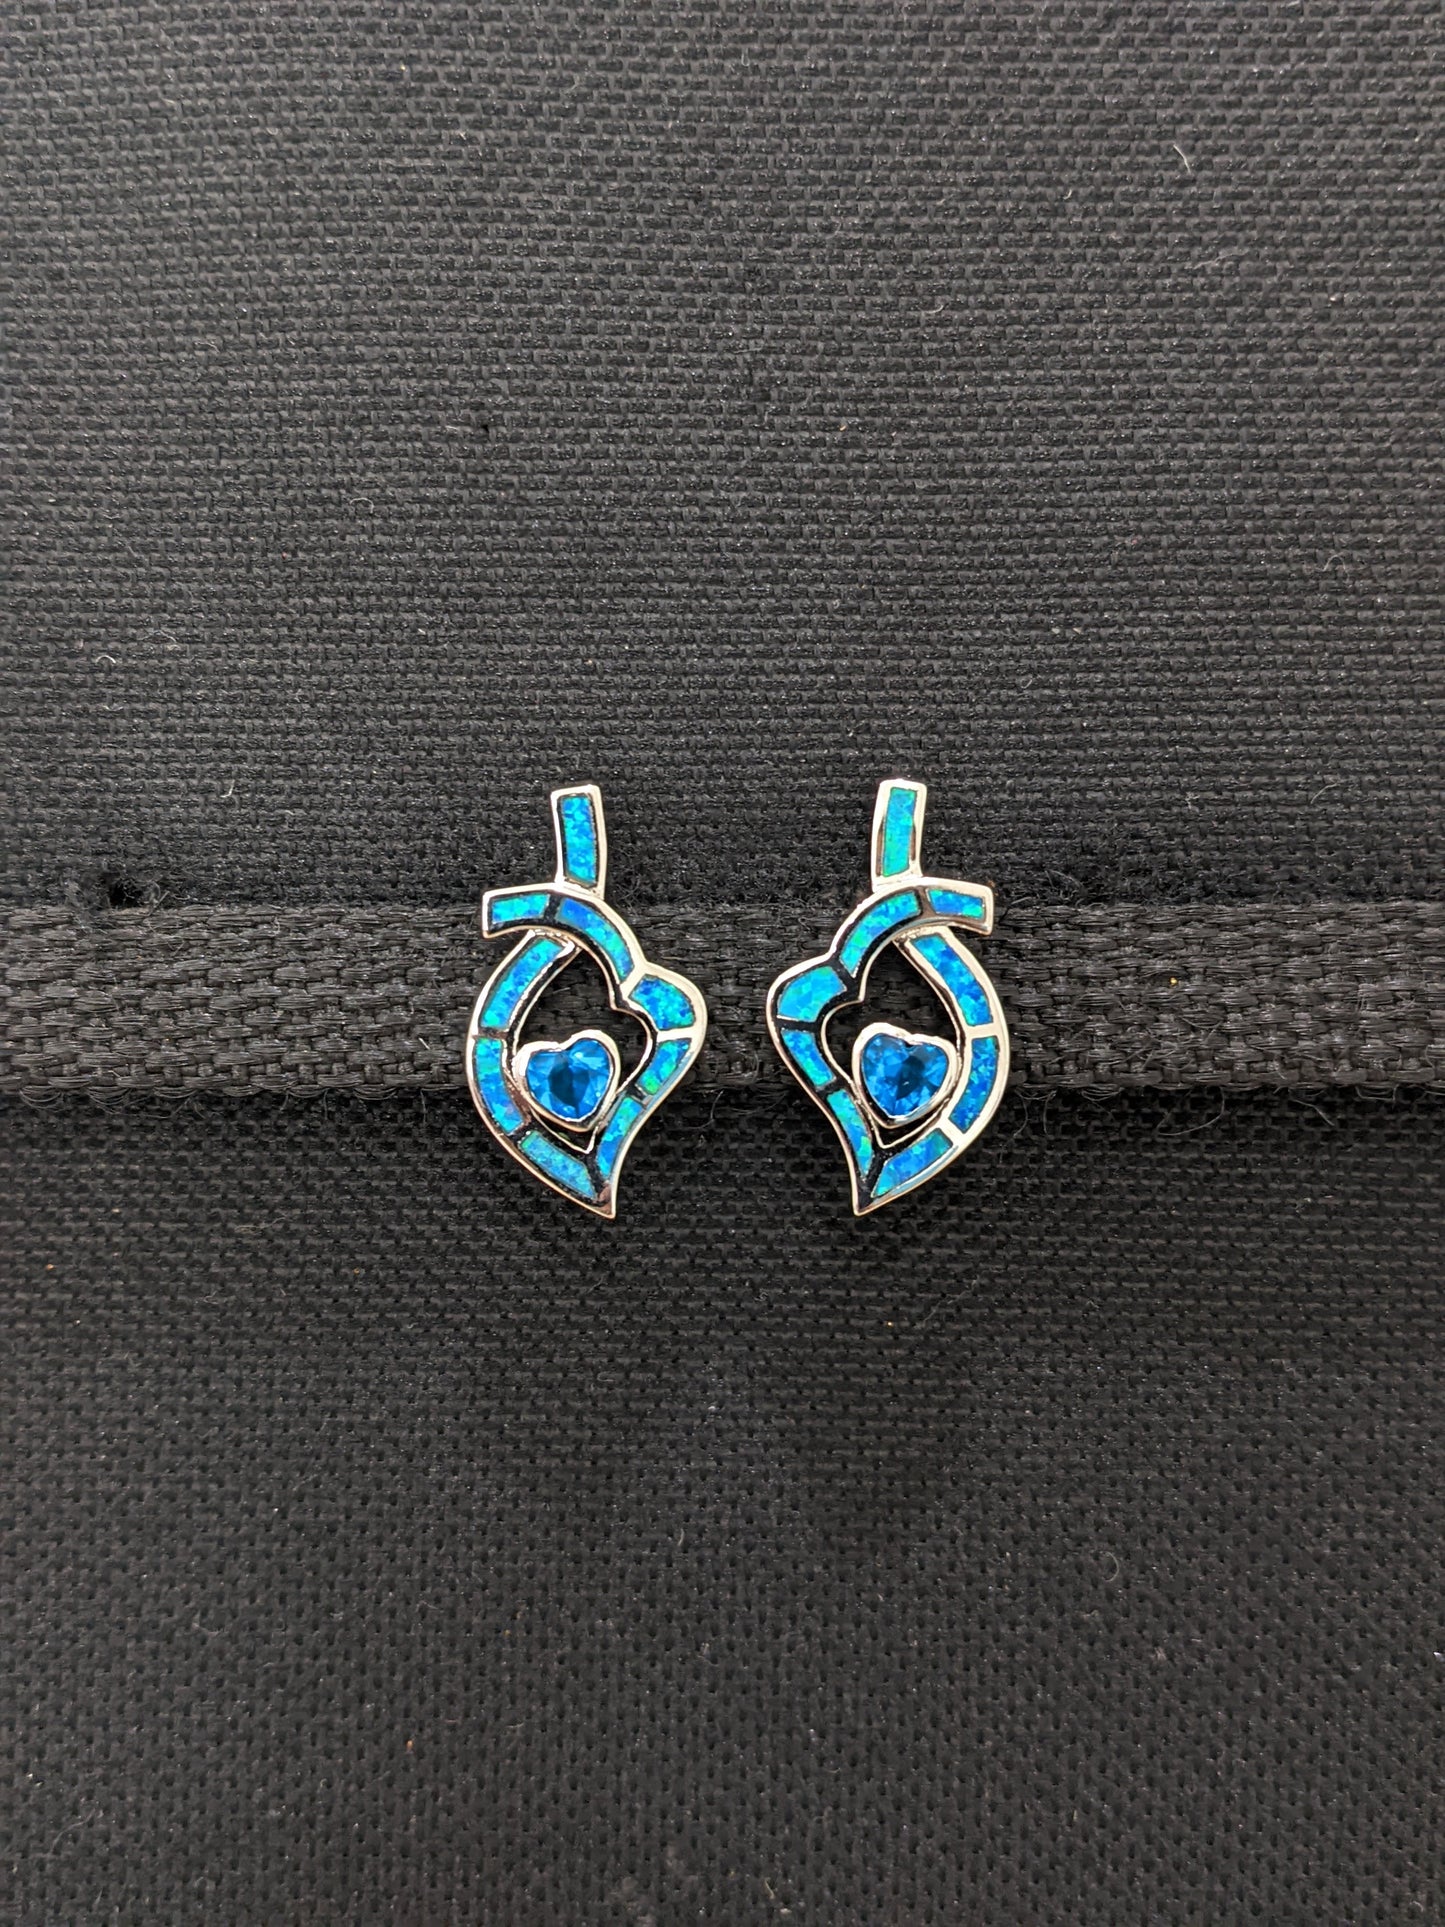 Blue opal heart stud earrings - Simpliful